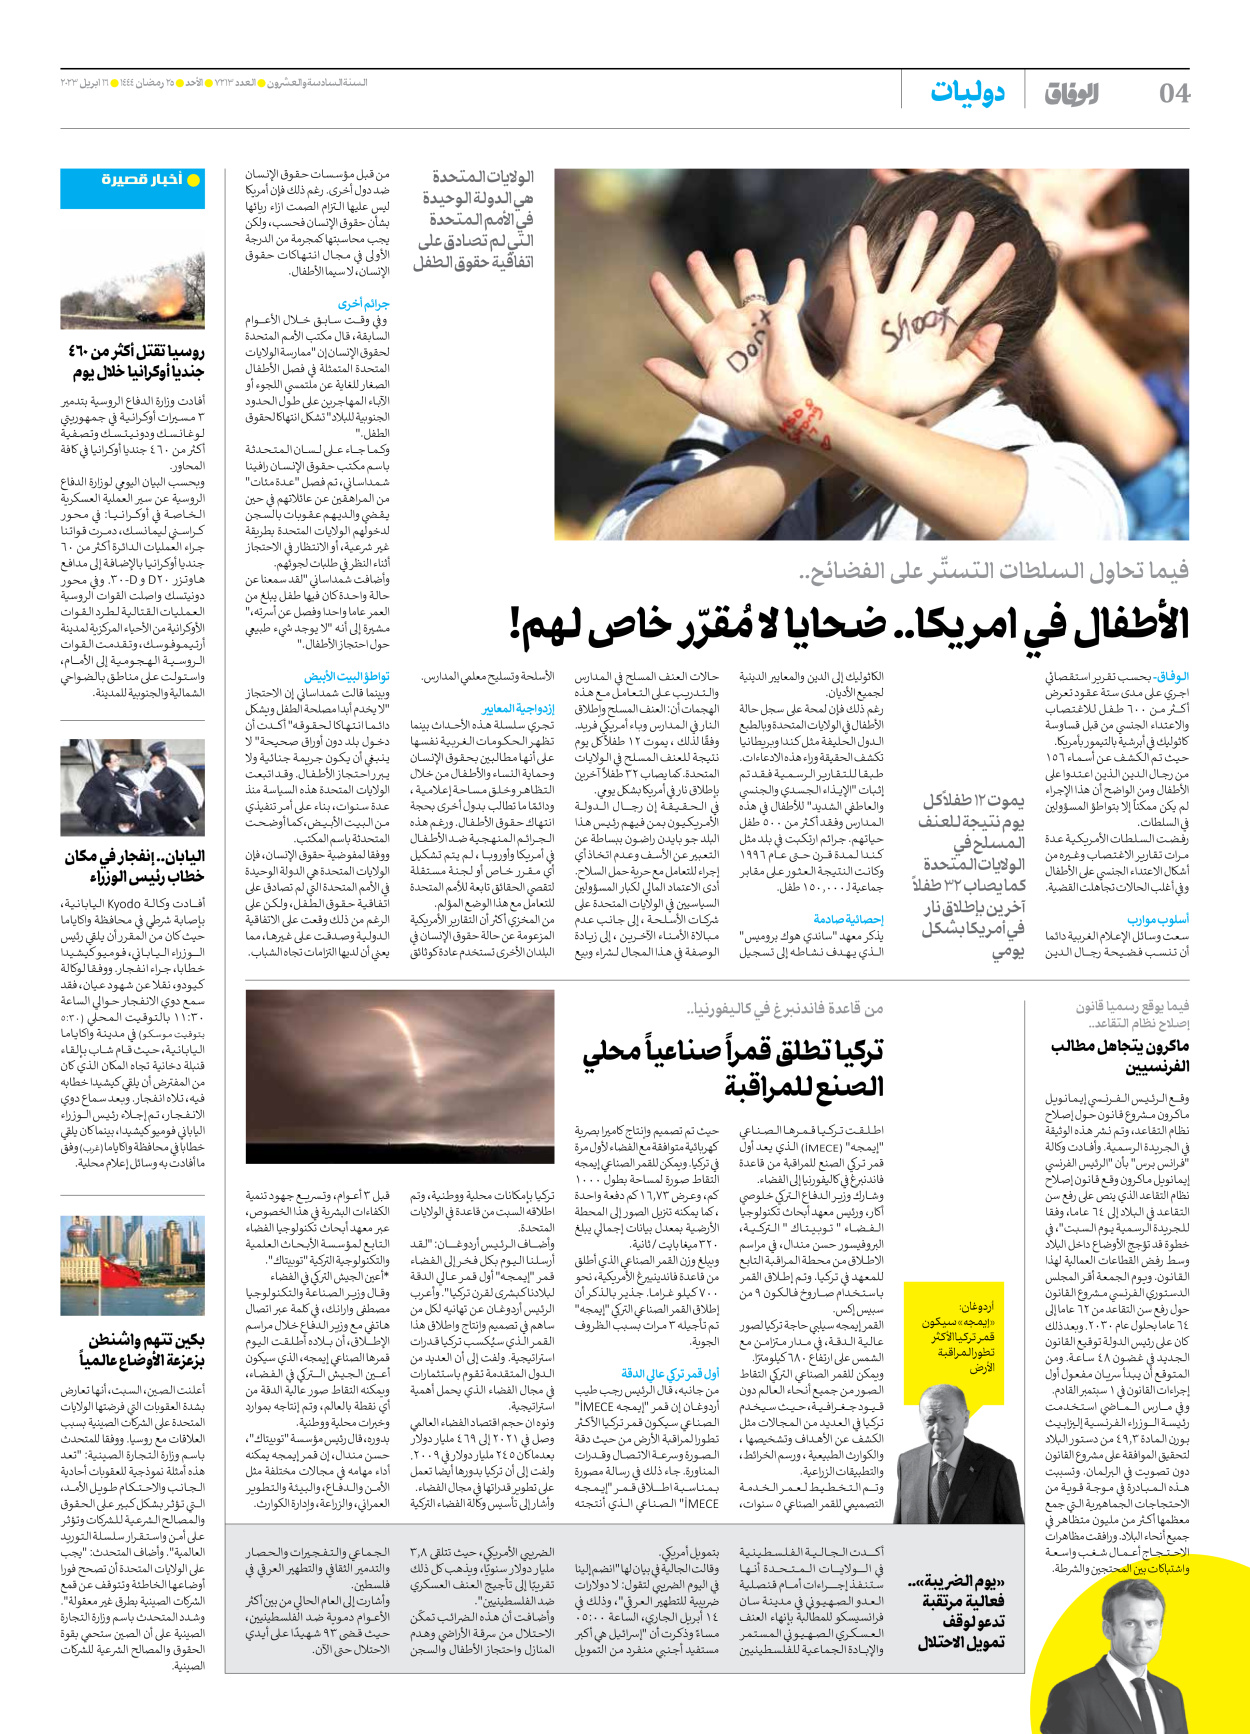 صحیفة ایران الدولیة الوفاق - العدد سبعة آلاف ومائتان وثلاثة عشر - ١٦ أبريل ٢٠٢٣ - الصفحة ٤